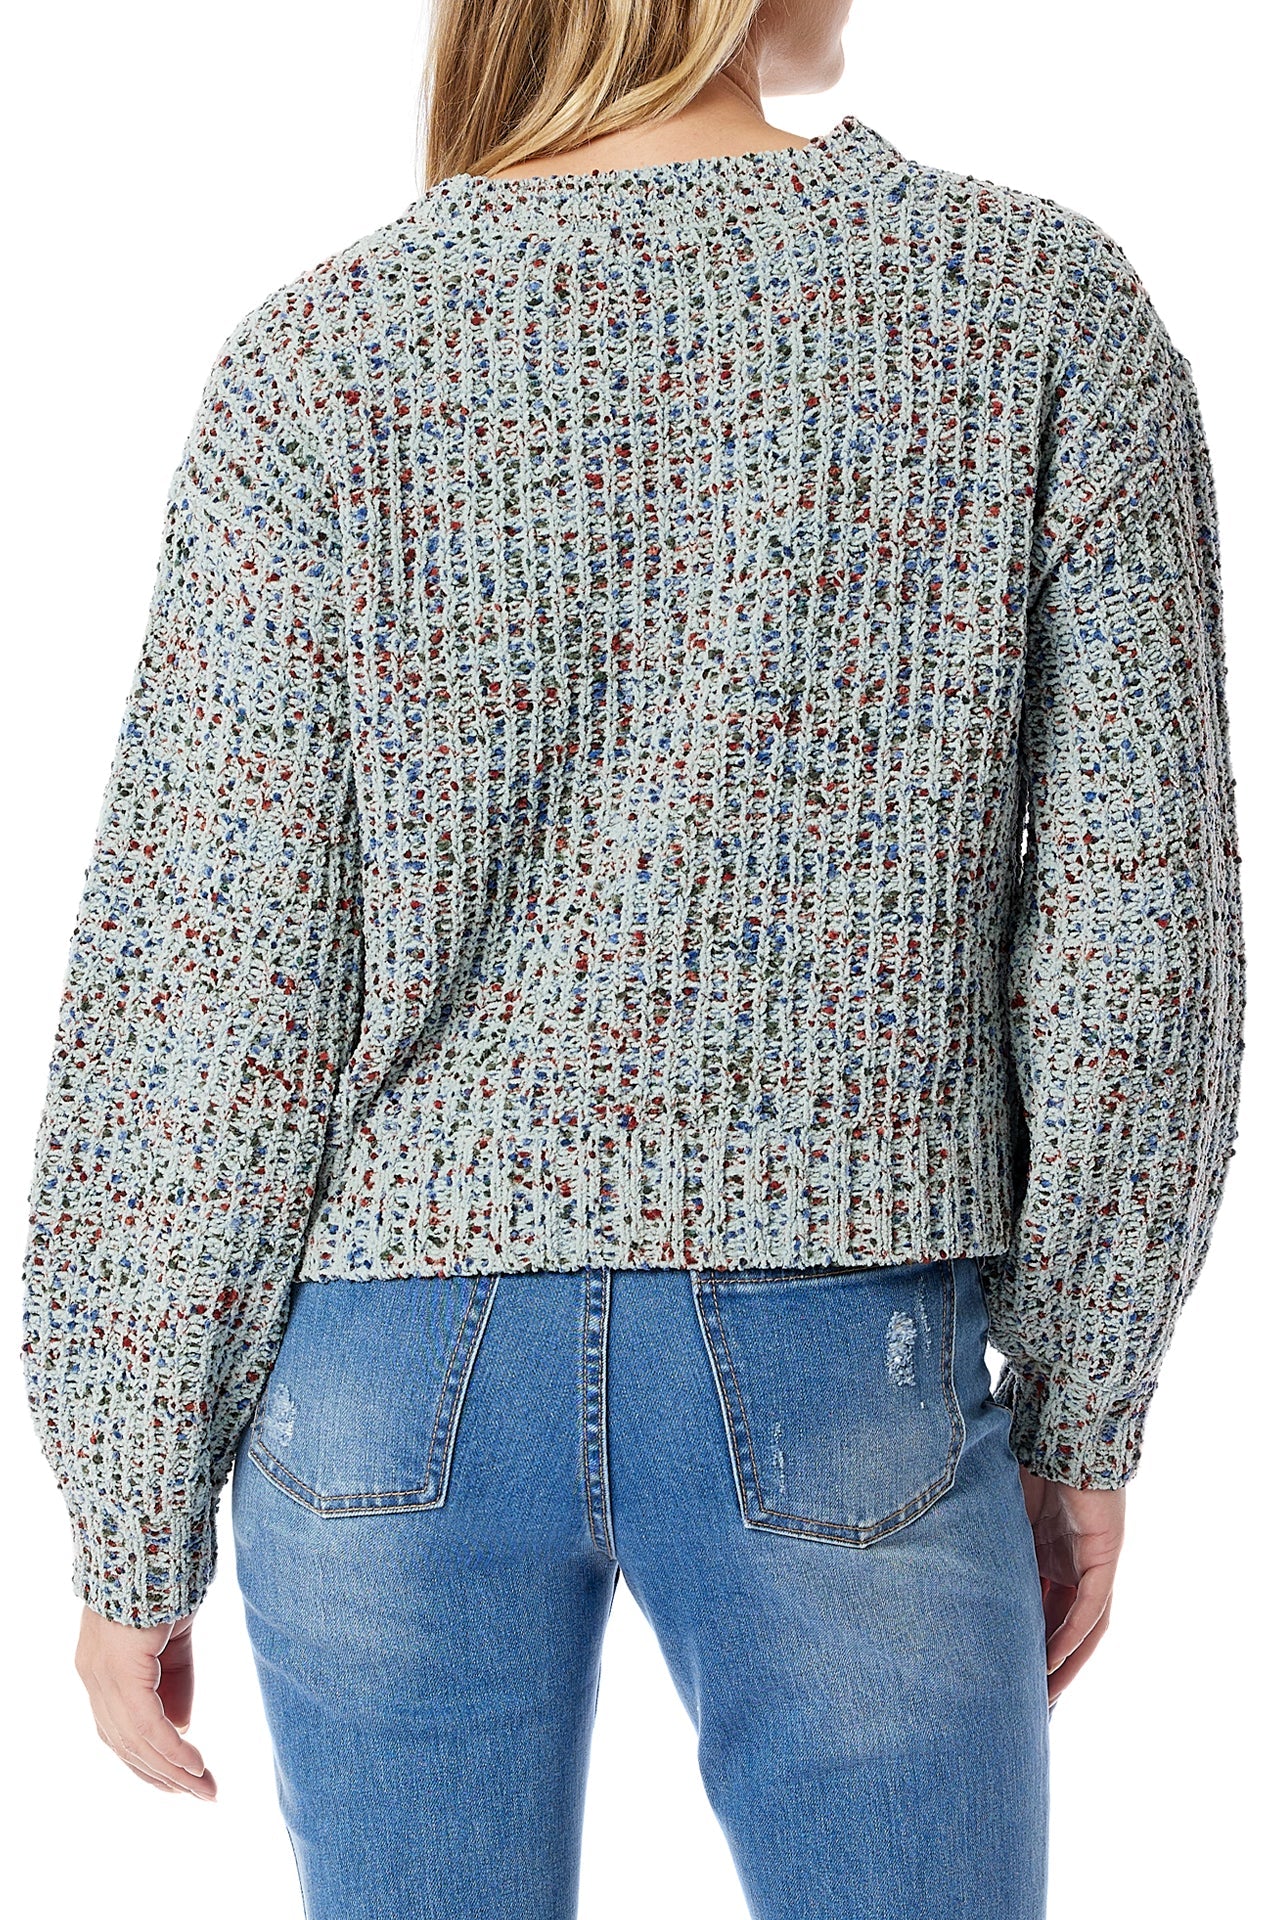 Audrina Confetti Sweater